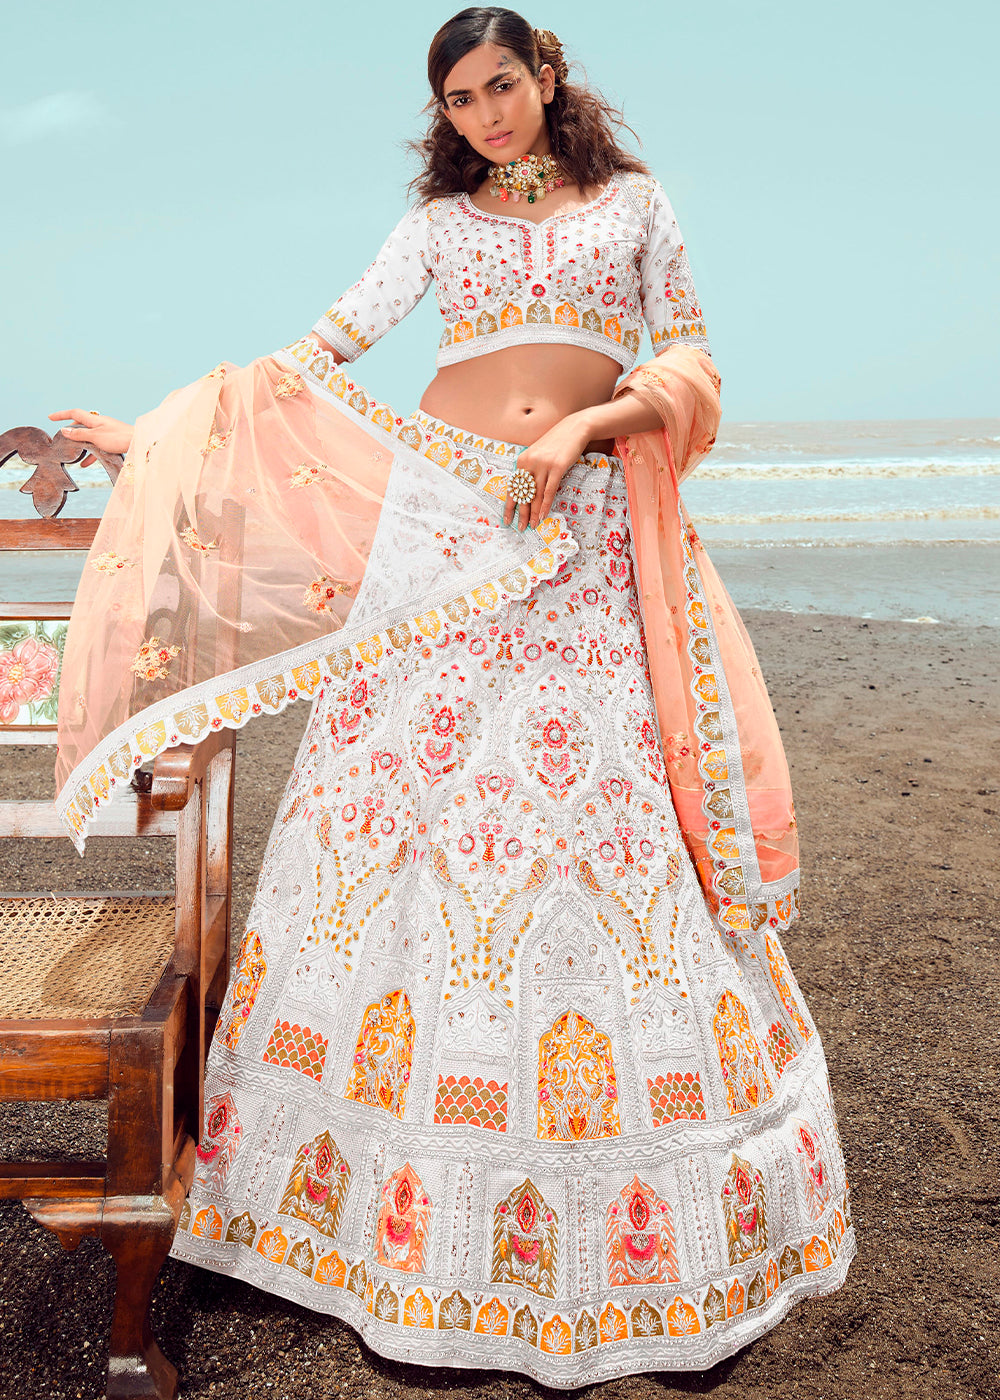 Divyanka Tripathi Dahiya's elegance | Off-white designer Lehenga...